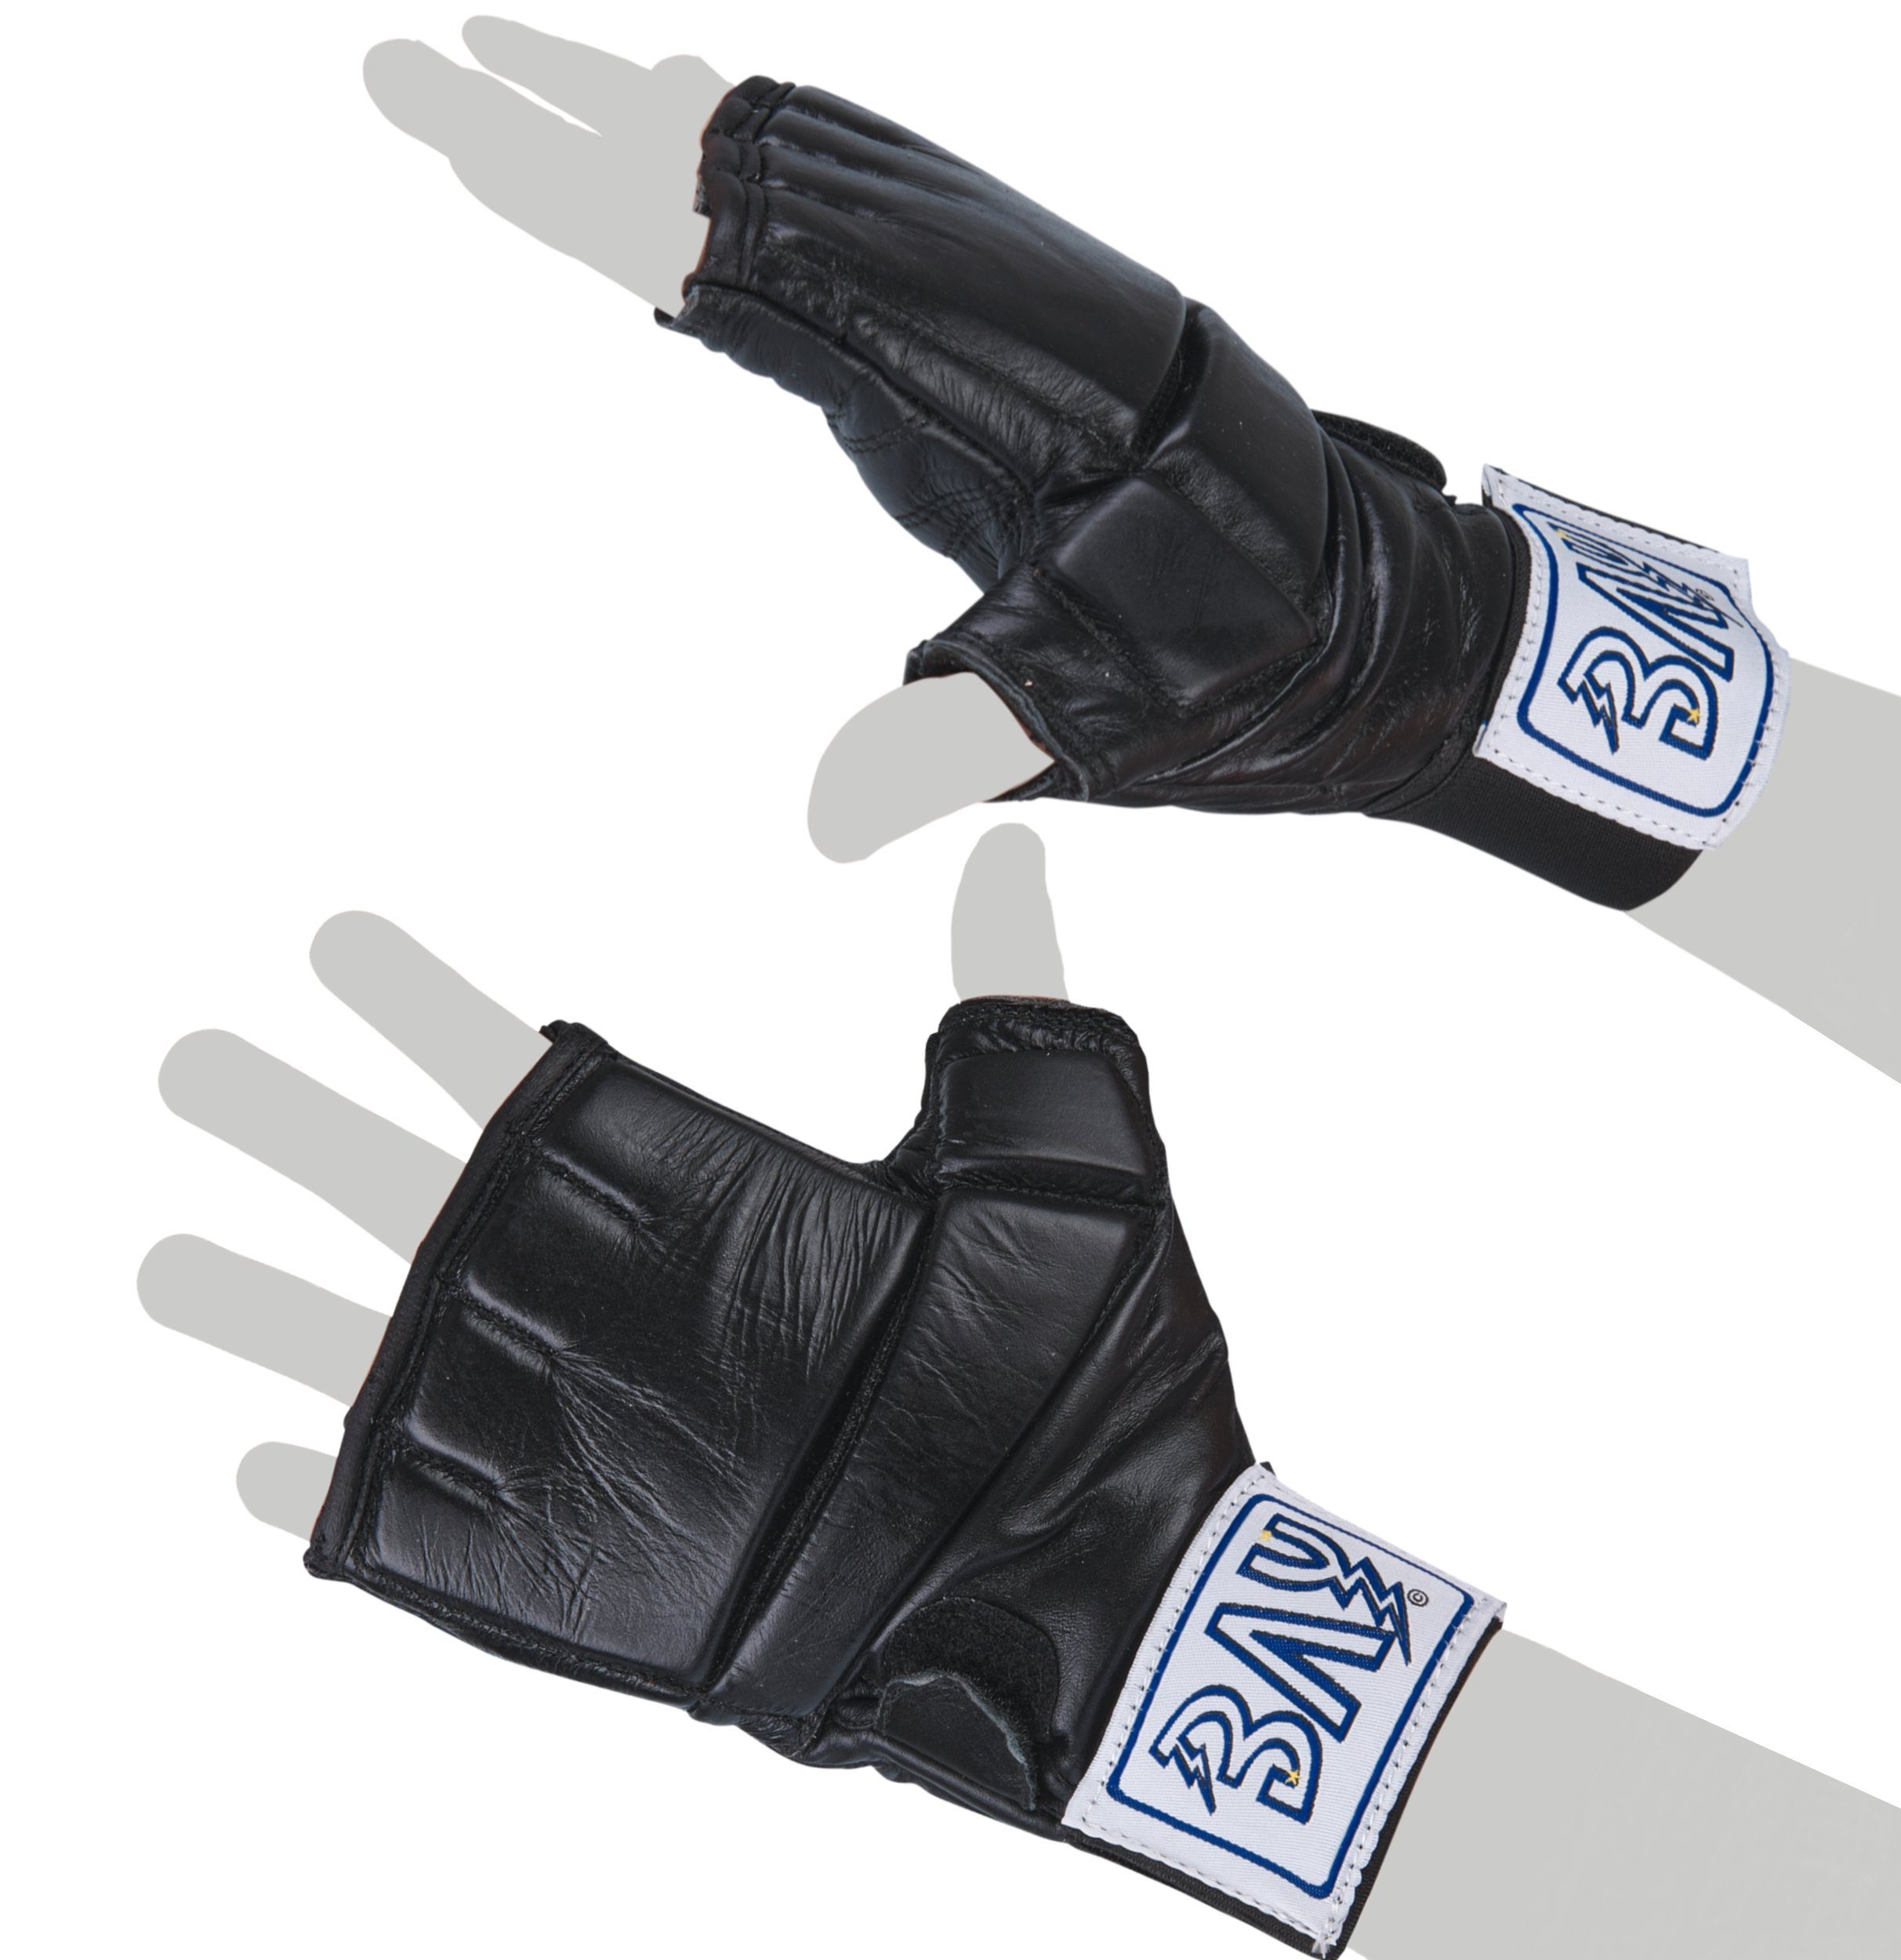 BAY-Sports Sandsackhandschuhe Leder XL S Sandsack Pad Gel Gel Boxsack Boxhandschuhe Handschut, Polsterung 